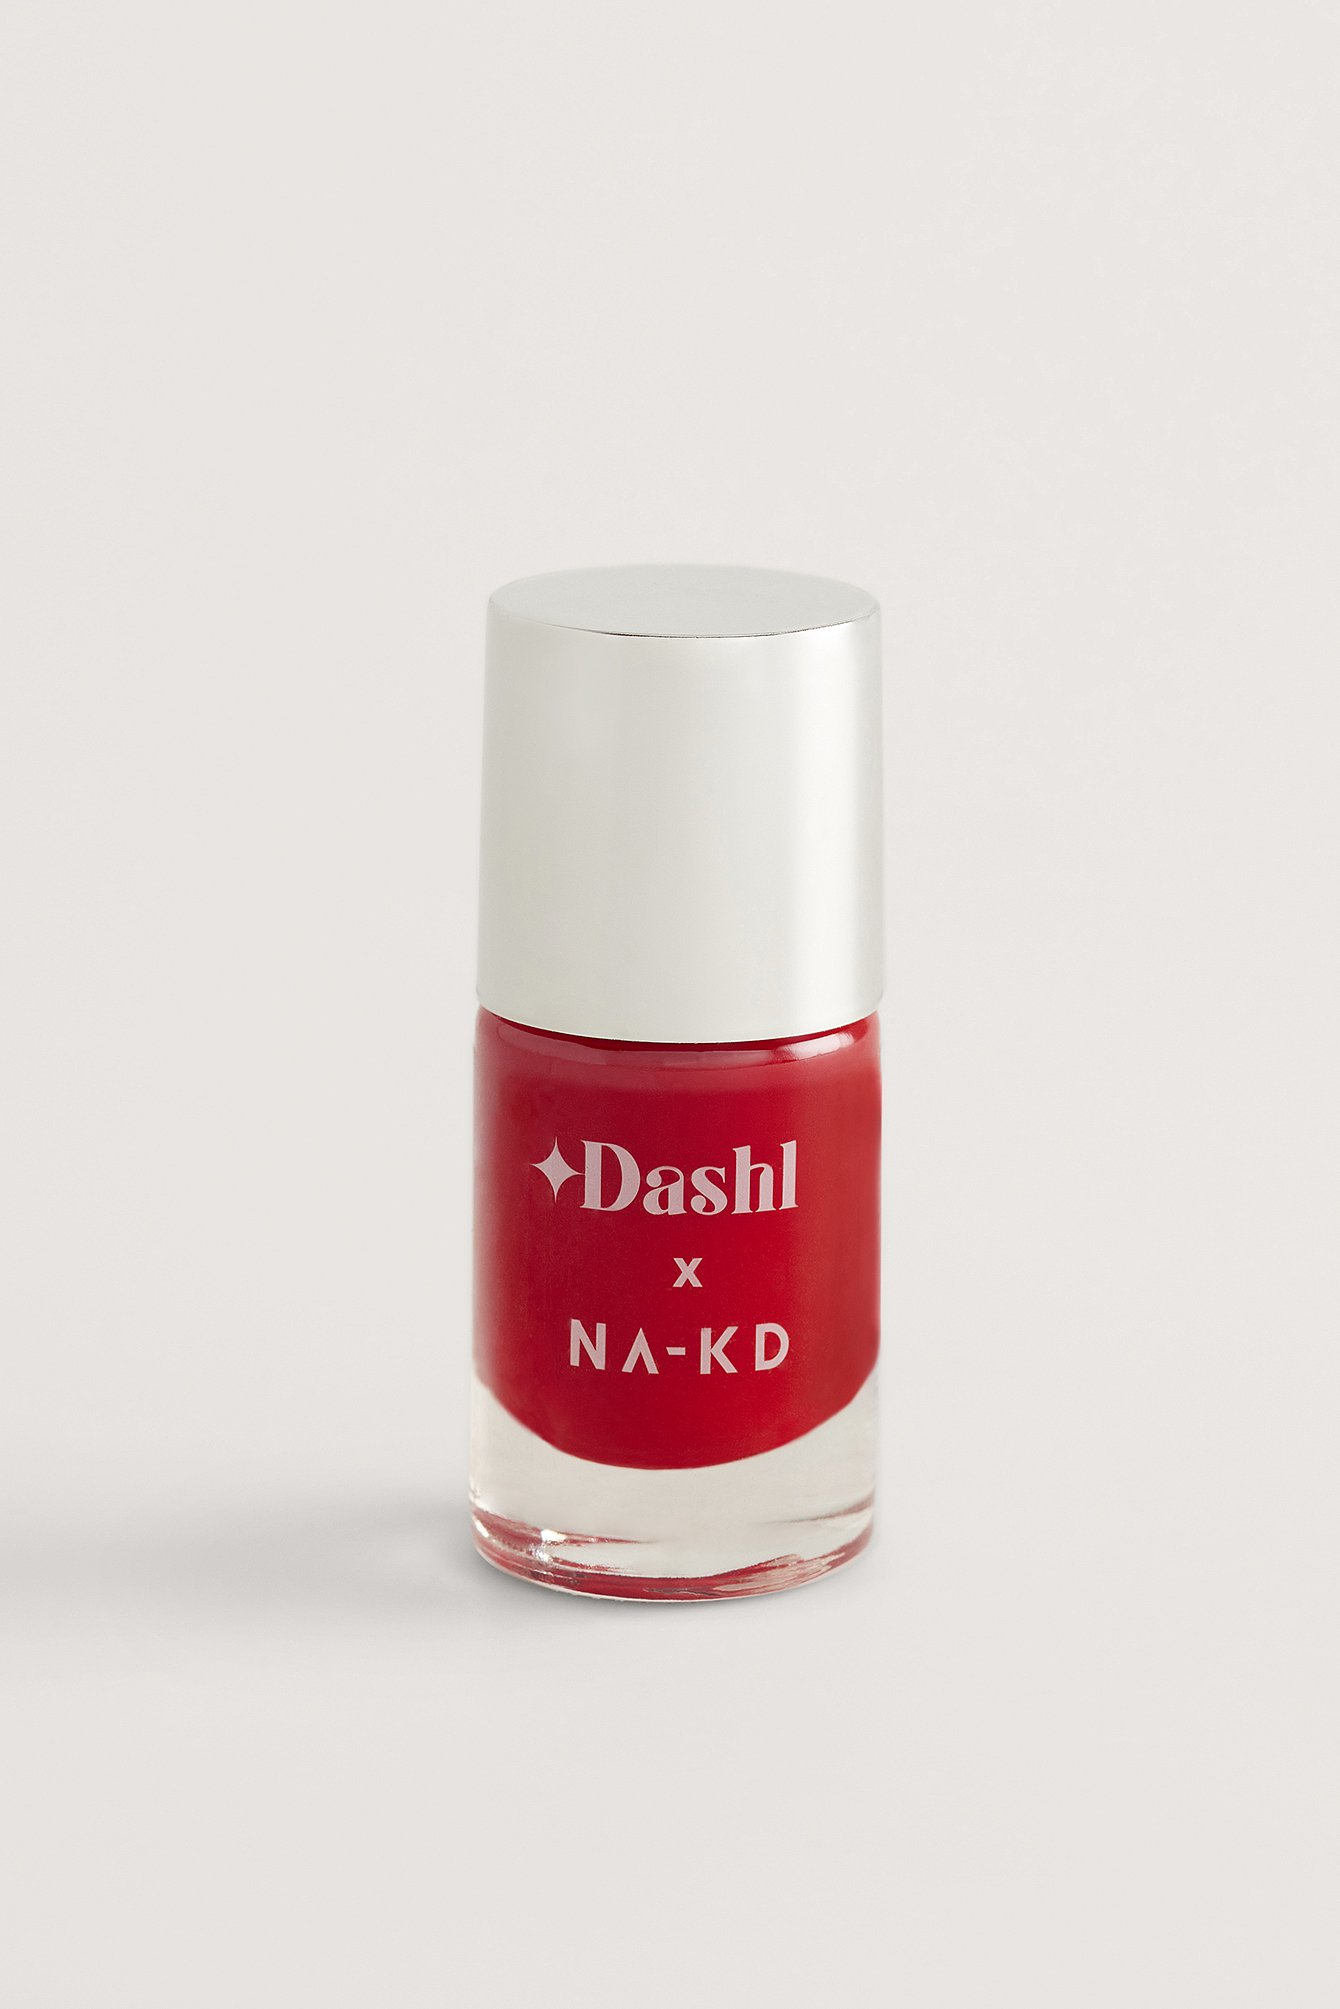 DASHL x NA-KD Nail Polish - Red